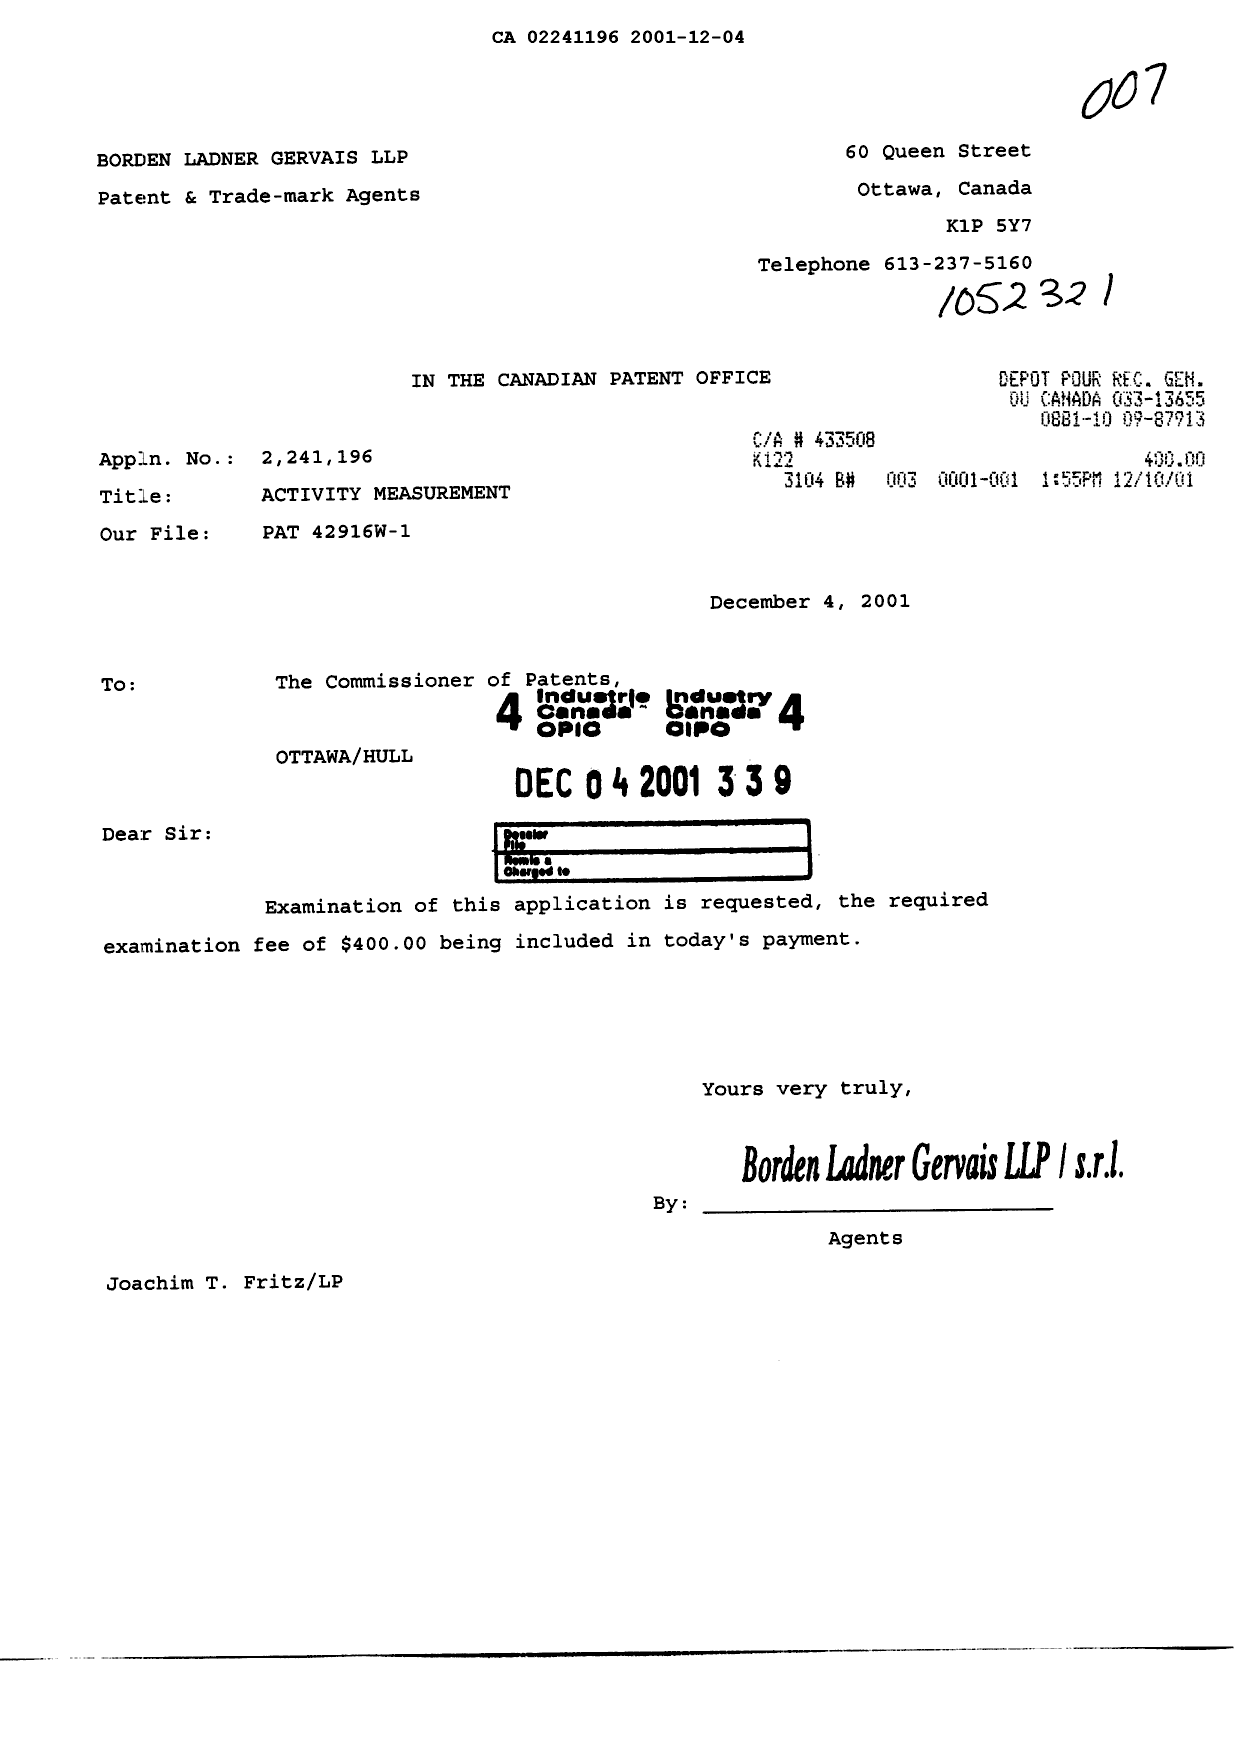 Document de brevet canadien 2241196. Poursuite-Amendment 20011204. Image 1 de 1